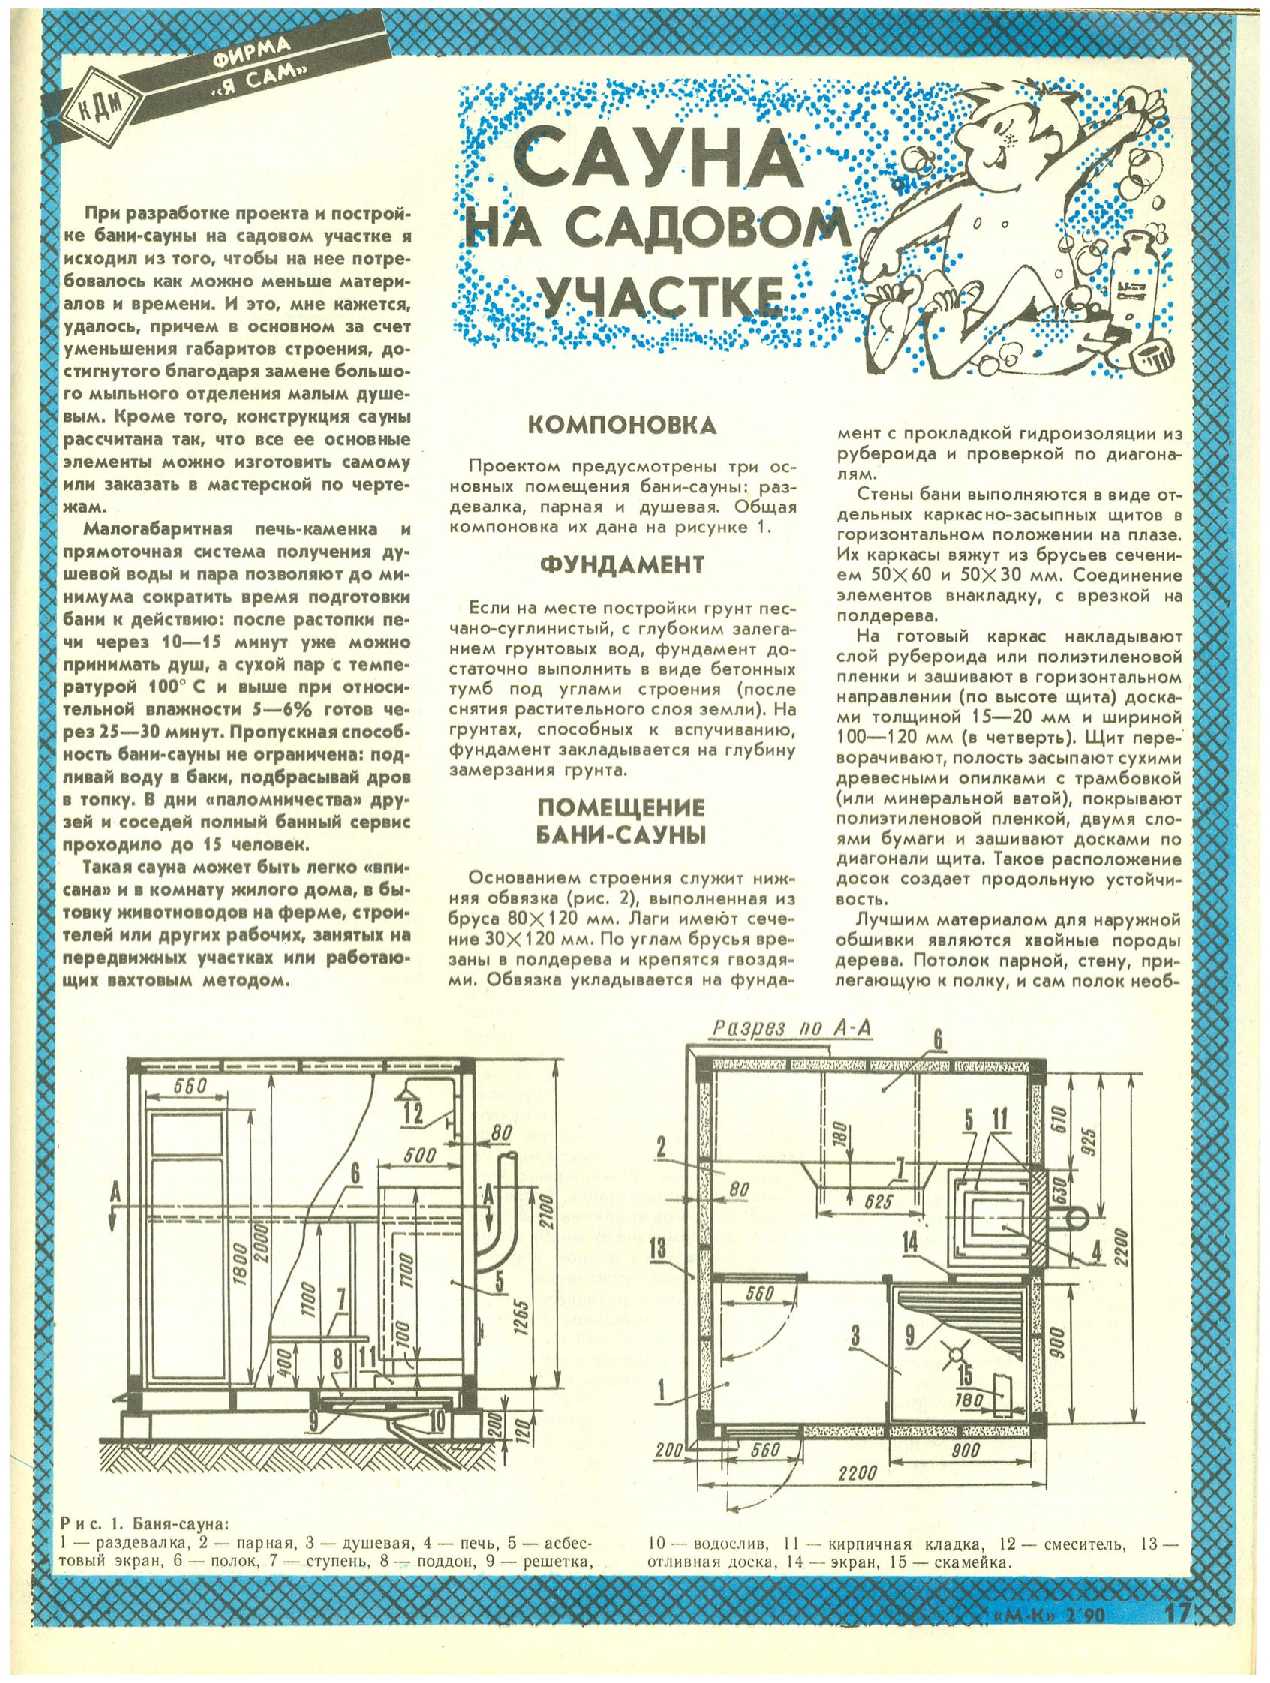 МК 2, 1990, 17 c.